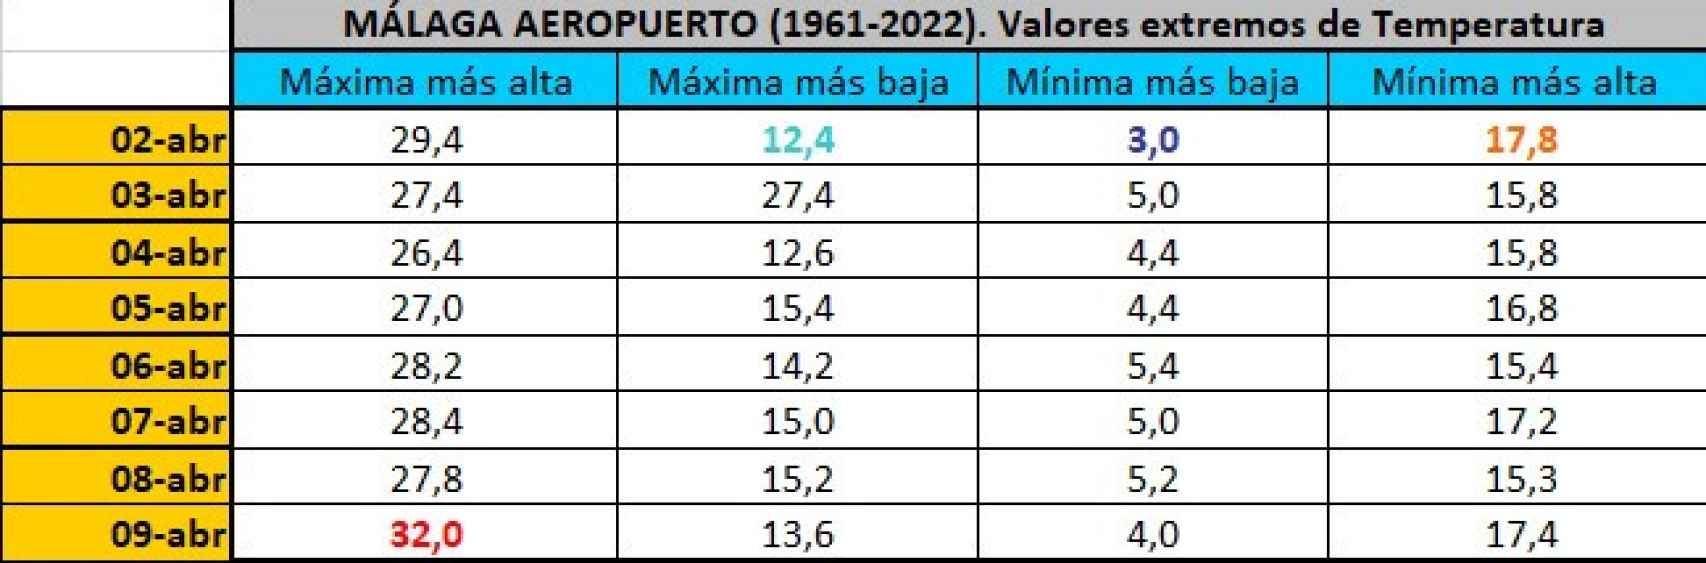 Temperaturas extremas en el periodo 1961-2022 en Málaga para Semana Santa.